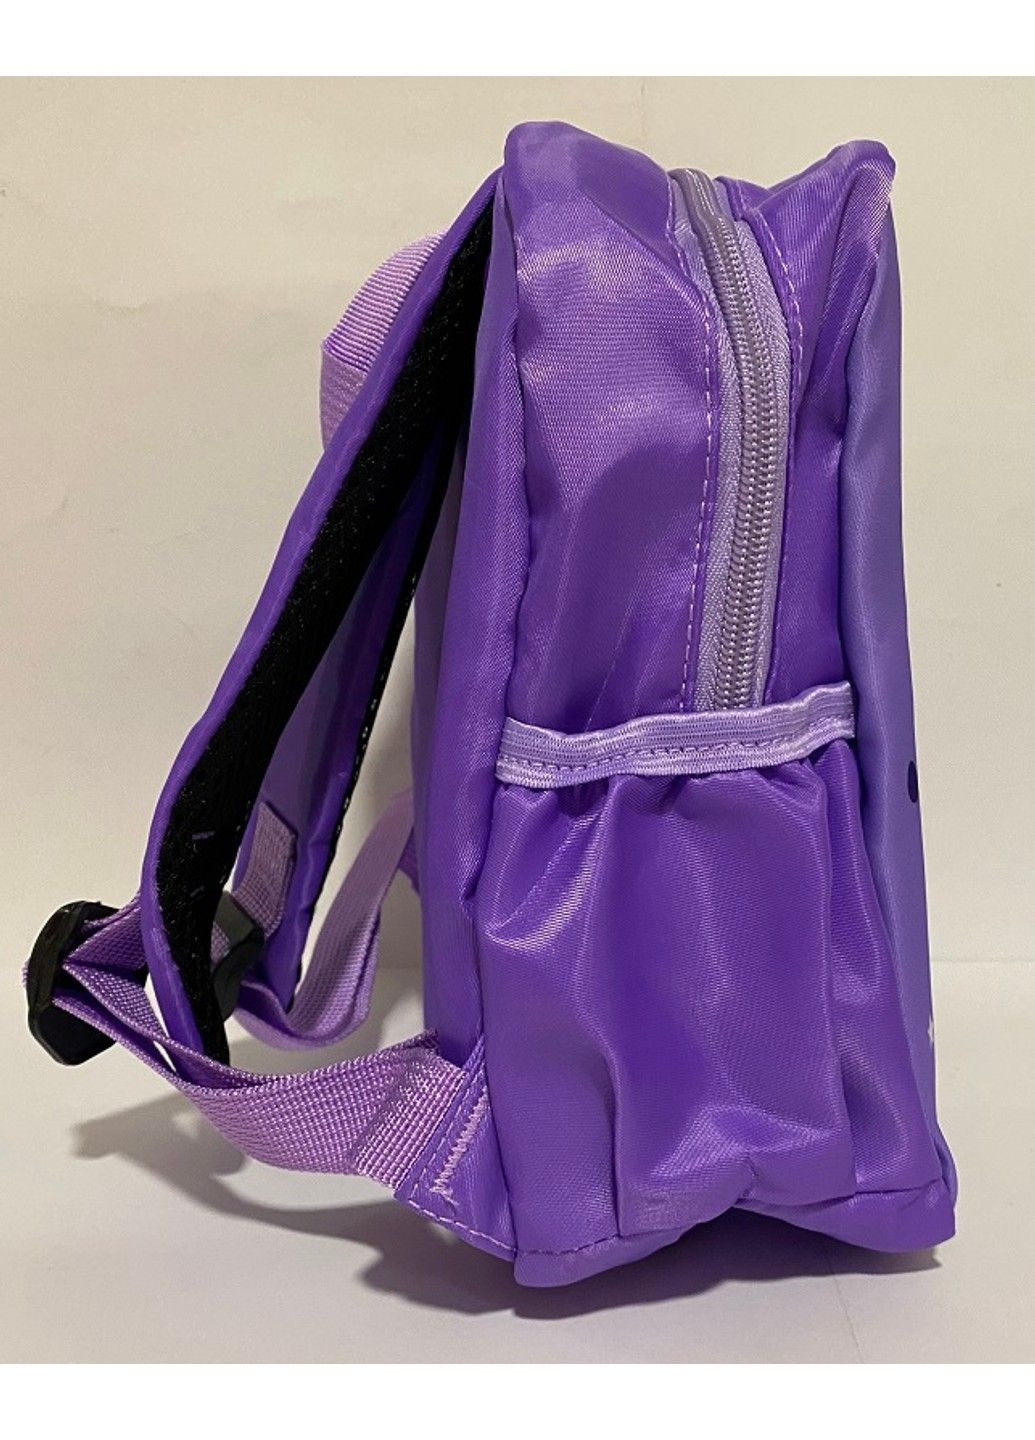 Рюкзак дитячий з тканини 25х21х10см Kuromiта іі друзі,фіолетовий 1319 No Brand (291161858)